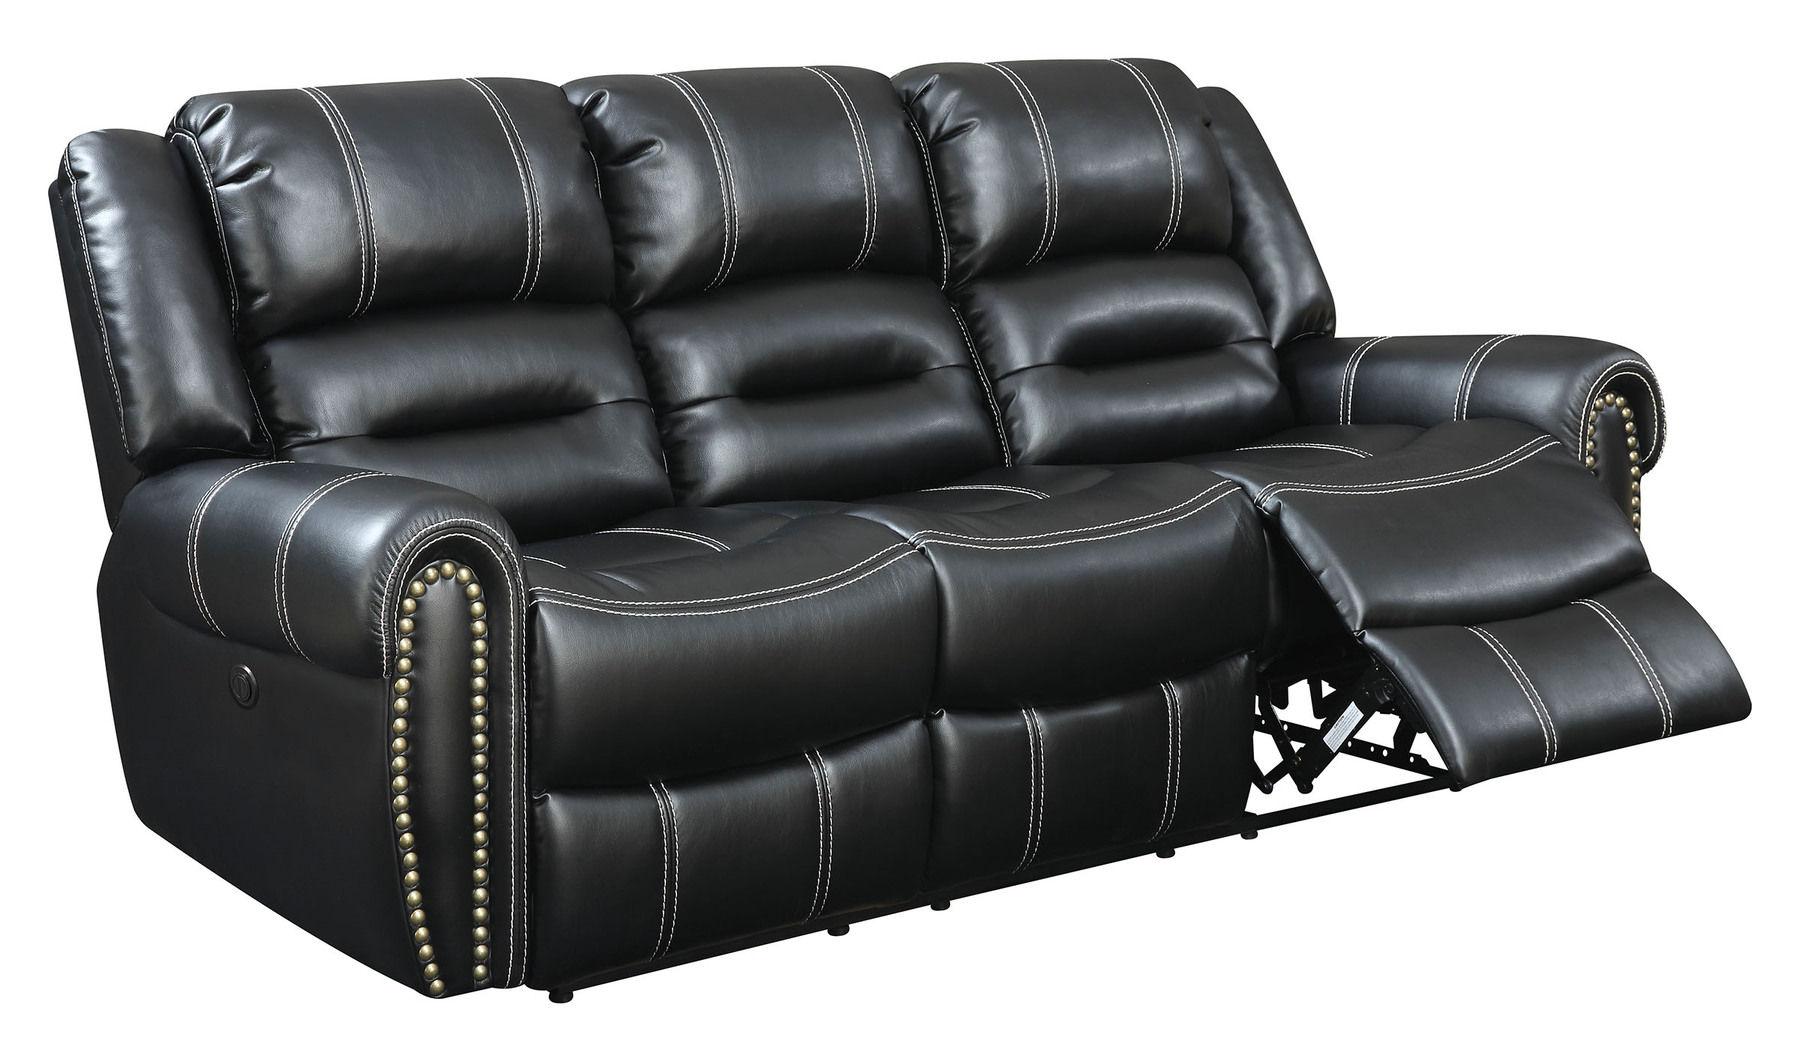 Furniture of America FREDERICK CM6130-SF Recliner Sofa